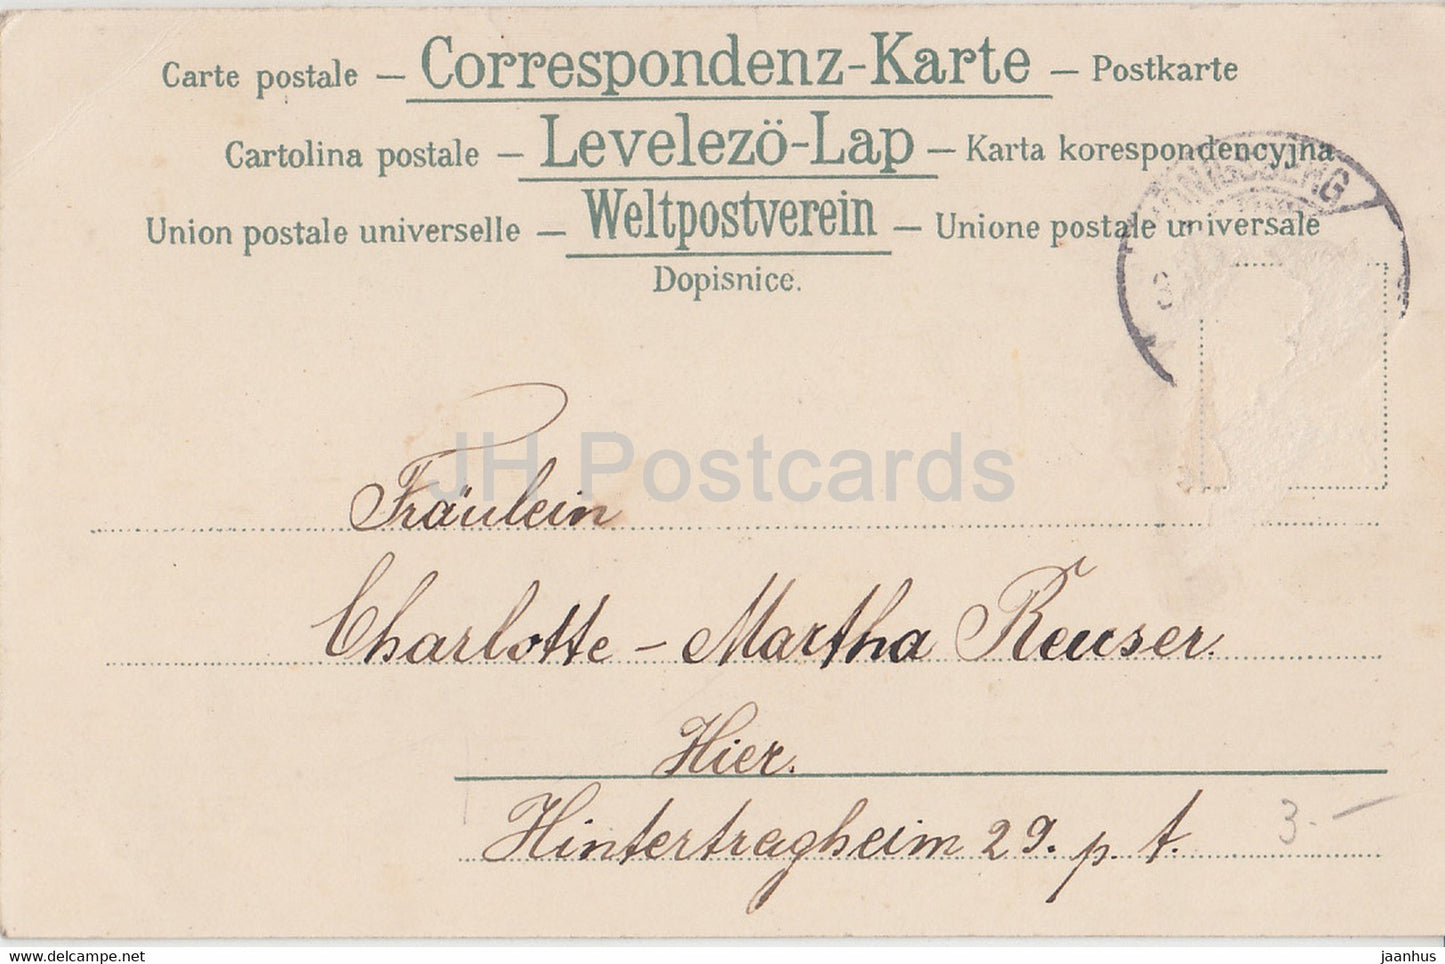 Neujahrsgrußkarte - Prosit Neujahr - sitzende Frau - Serie 202 - Theo Stroefer FW alte Postkarte 1903 Deutschland - gebraucht